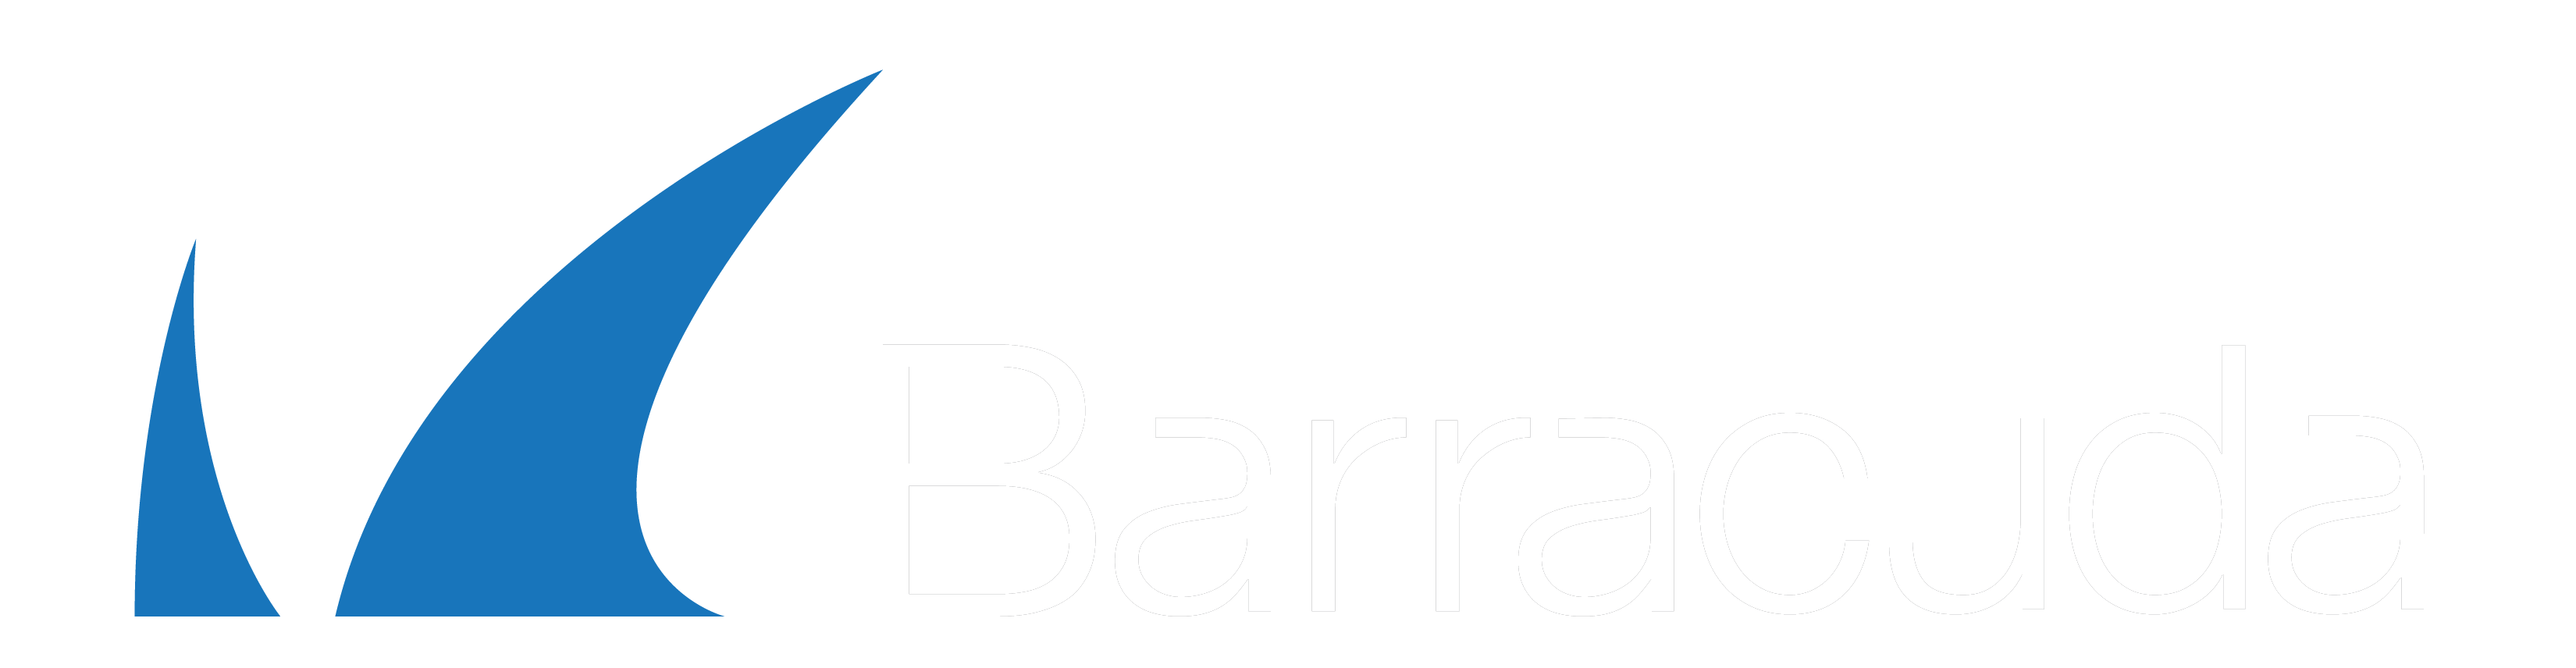 Logo Barracuda Networks